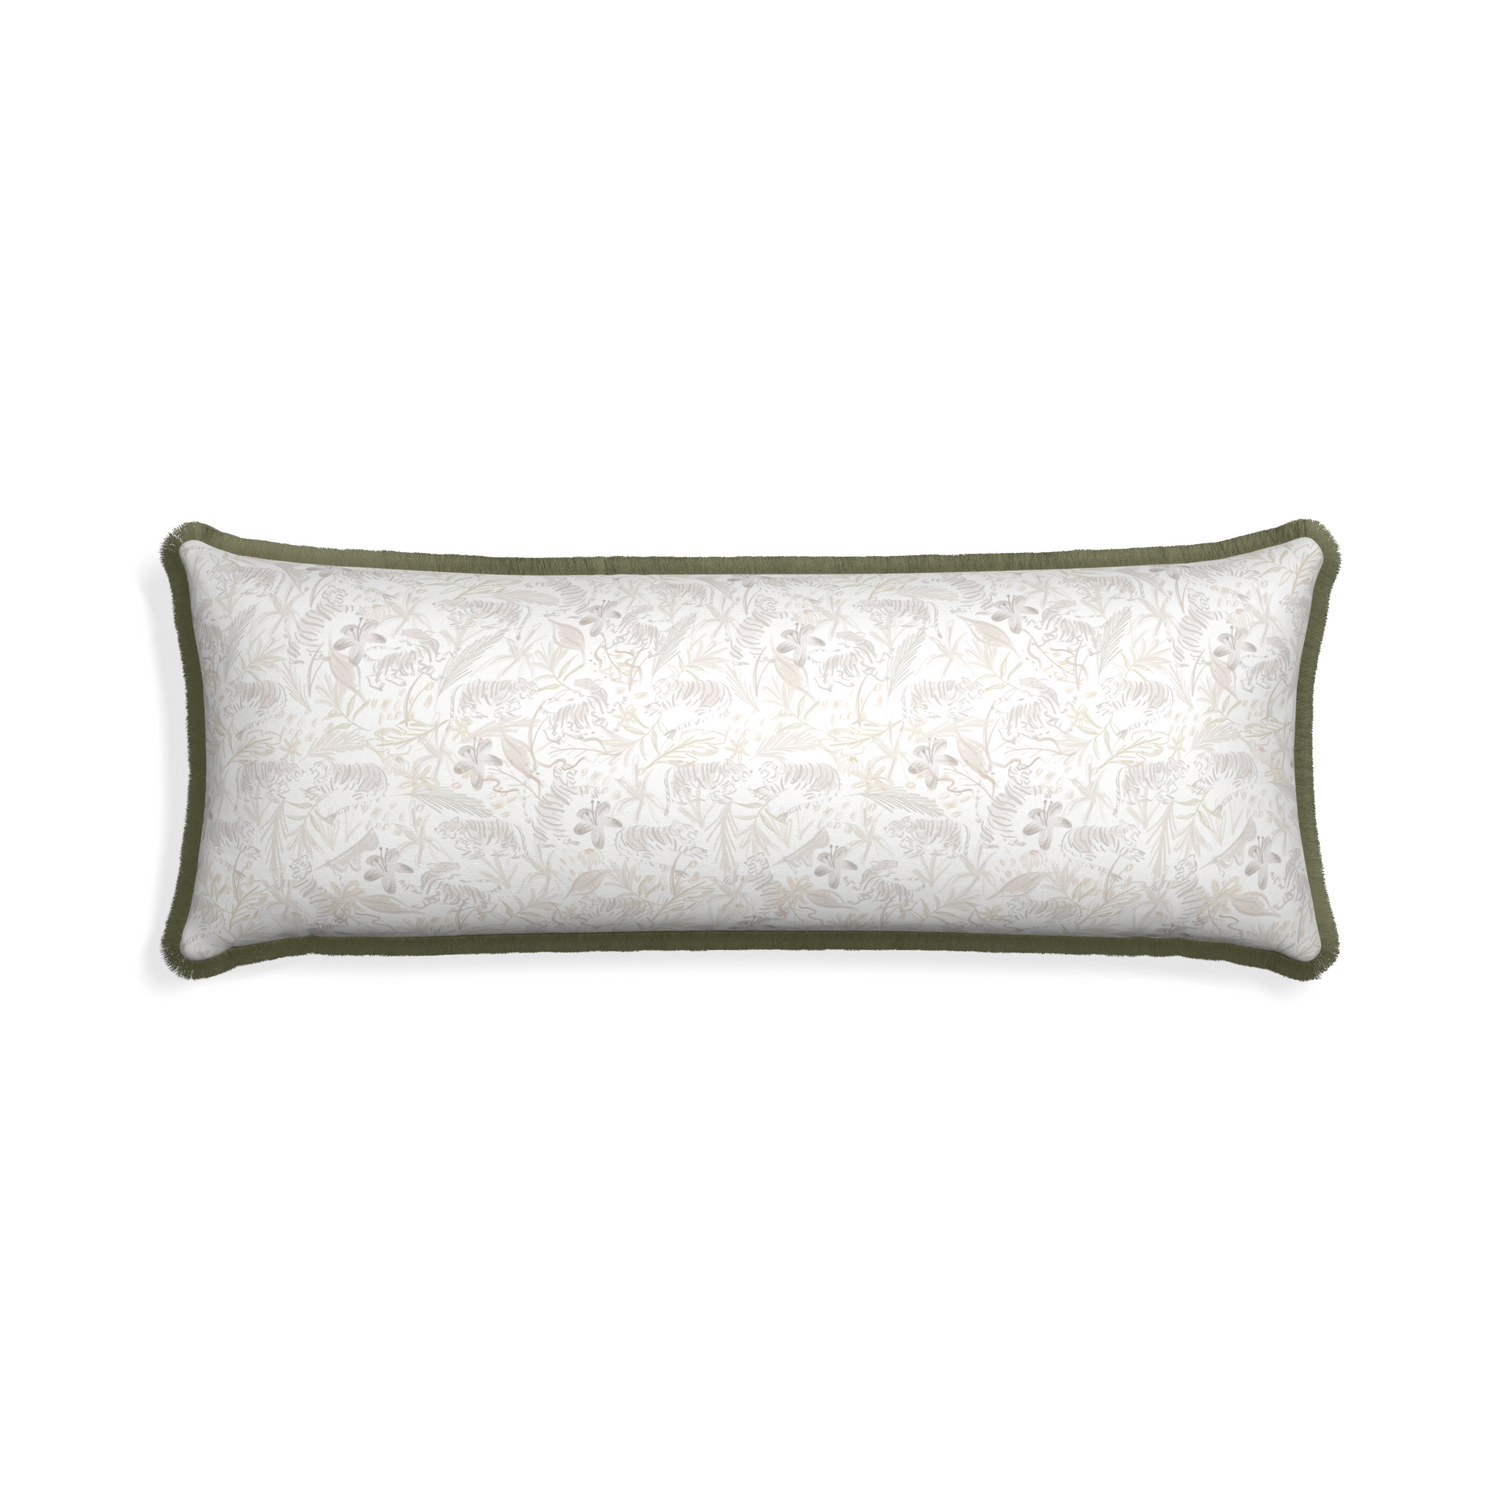 Xl-lumbar frida sand custom pillow with sage fringe on white background